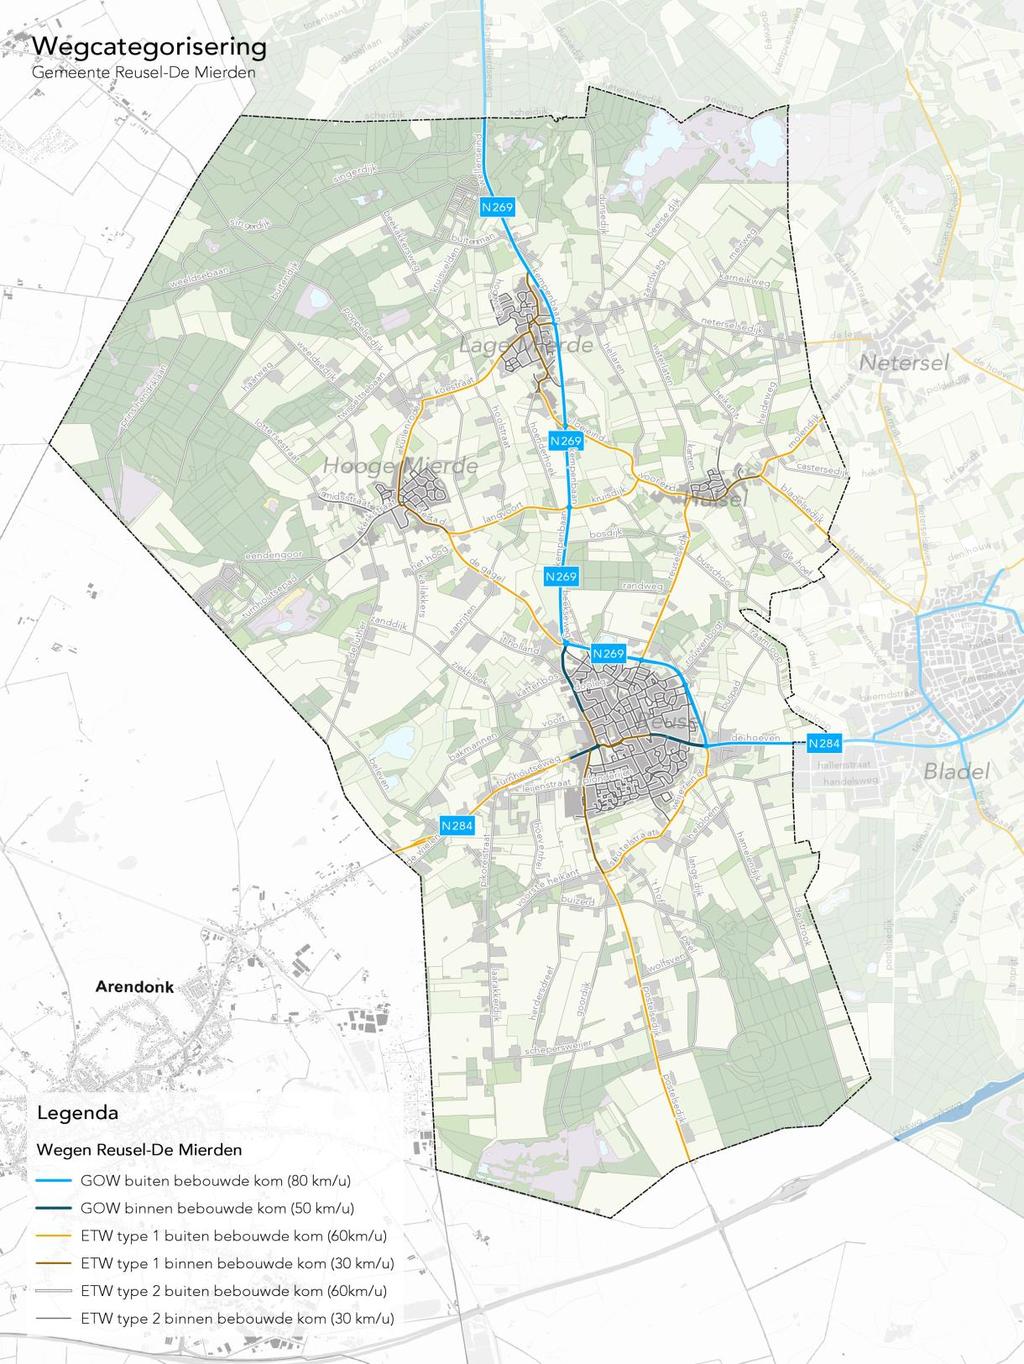 figuur 1: categorisering wegennet gemeente Reusel-De Mierden